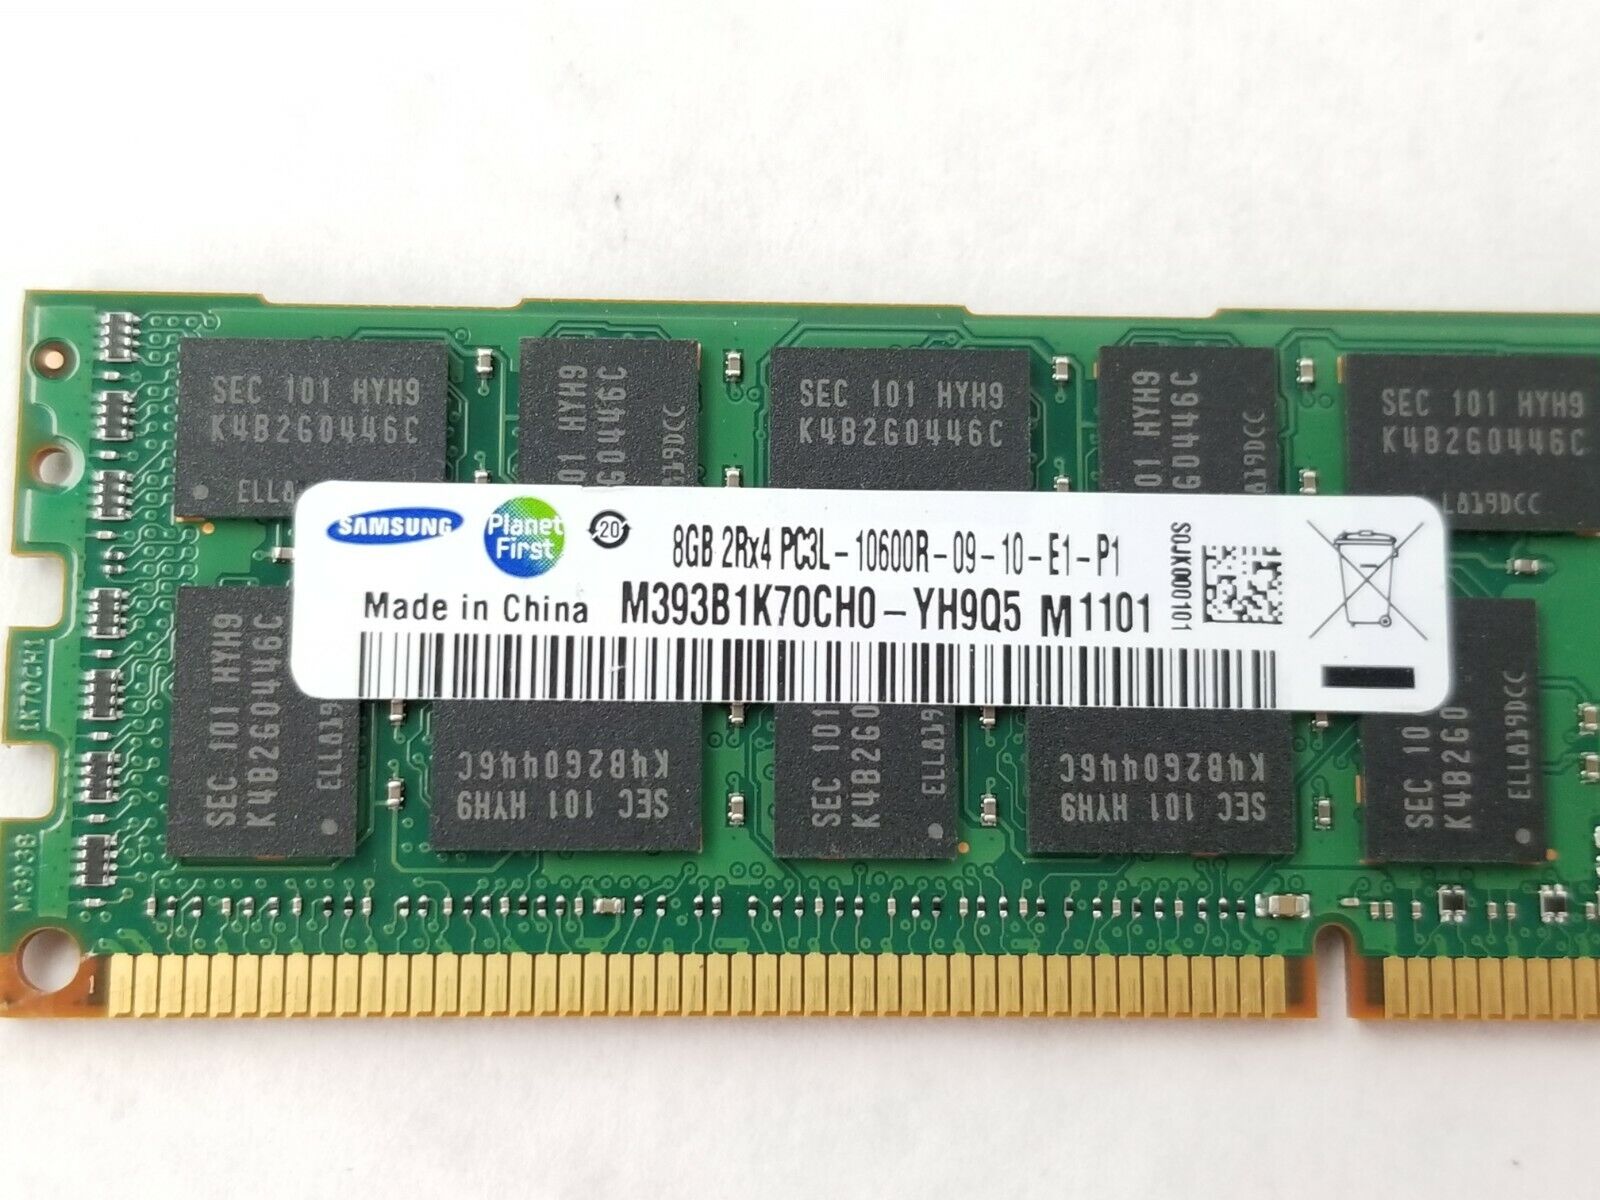 Samsung M393B1K70CH0-YH9 8GB 2Rx4 PC3L-10600R-09-10-E1-P1 Server Memory